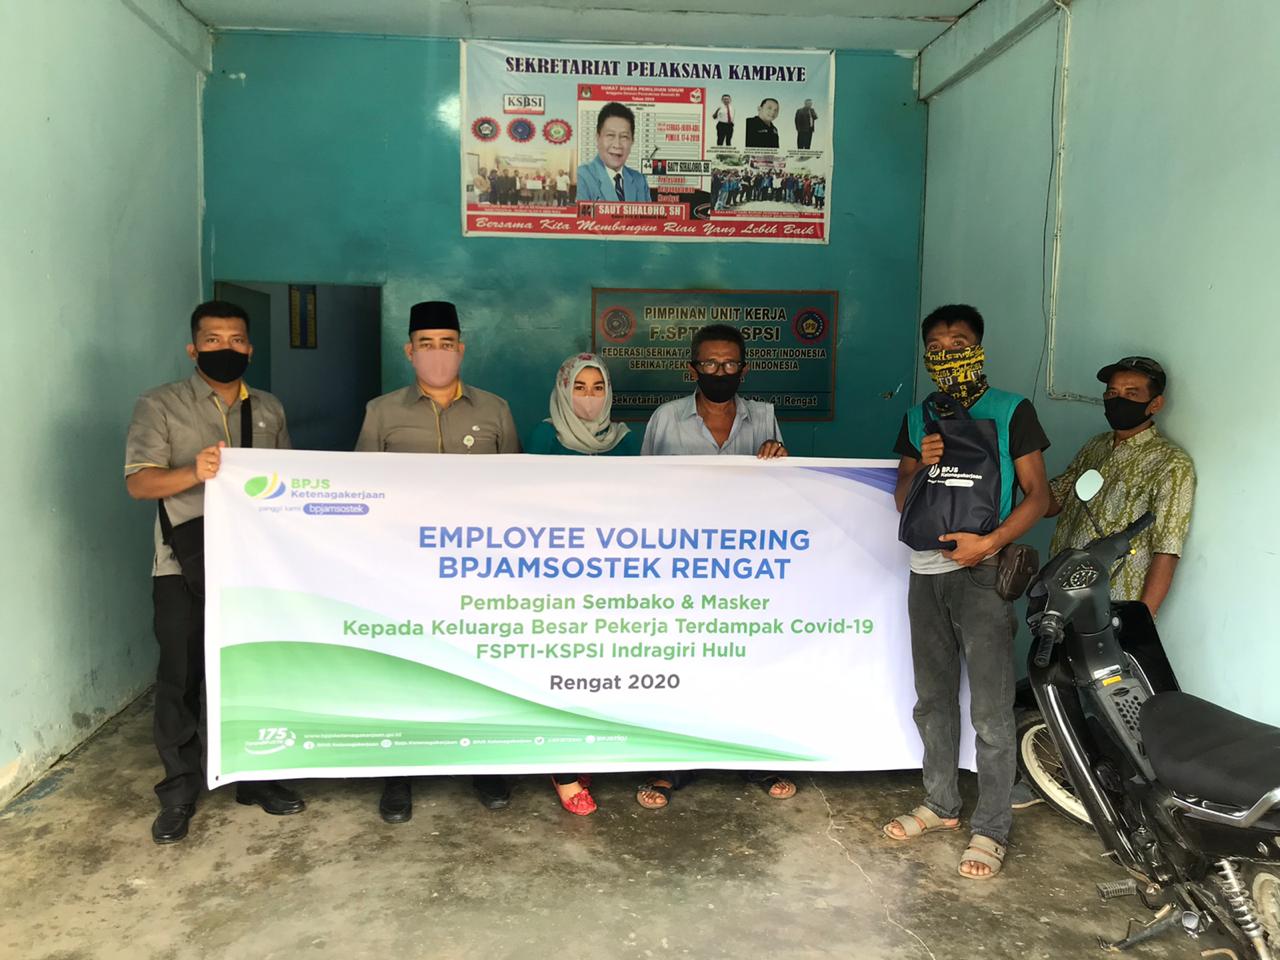 Gelar Employee Volunteering, BPJAMSOSTEK Rengat Salurkan Bantuan Masker dan Sembako